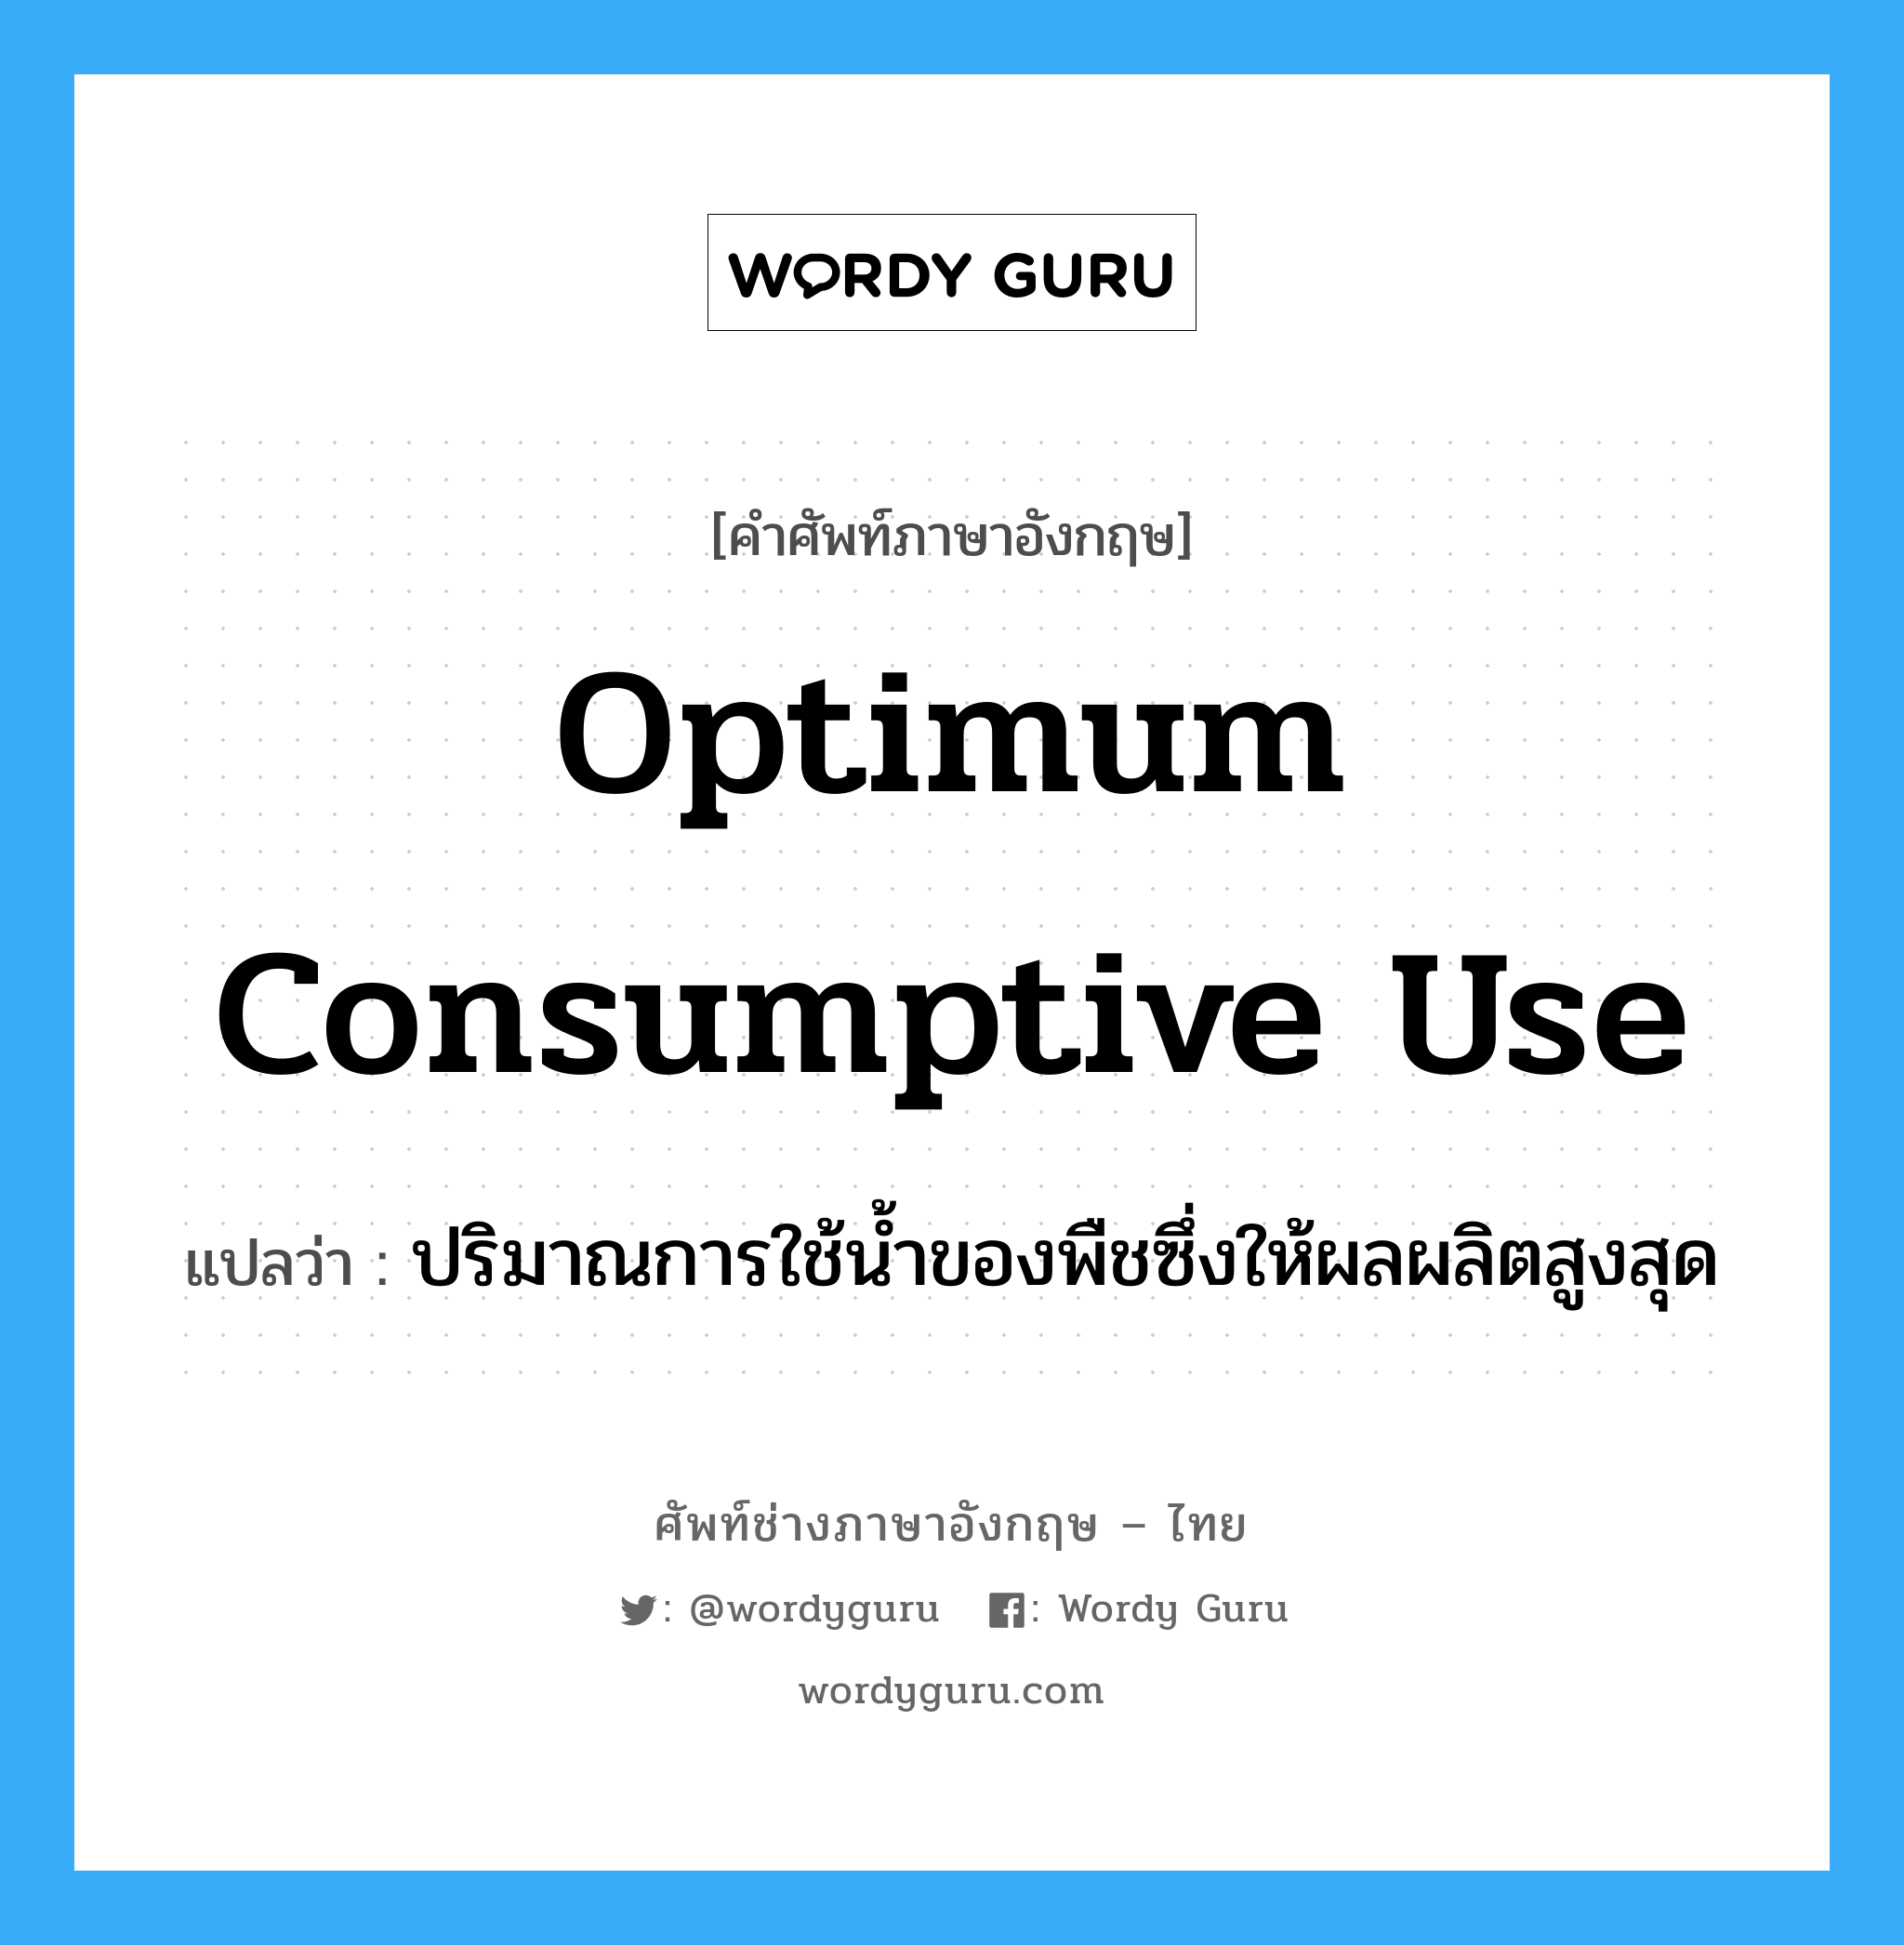 optimum consumptive use แปลว่า?, คำศัพท์ช่างภาษาอังกฤษ - ไทย optimum consumptive use คำศัพท์ภาษาอังกฤษ optimum consumptive use แปลว่า ปริมาณการใช้น้ำของพืชซึ่งให้ผลผลิตสูงสุด